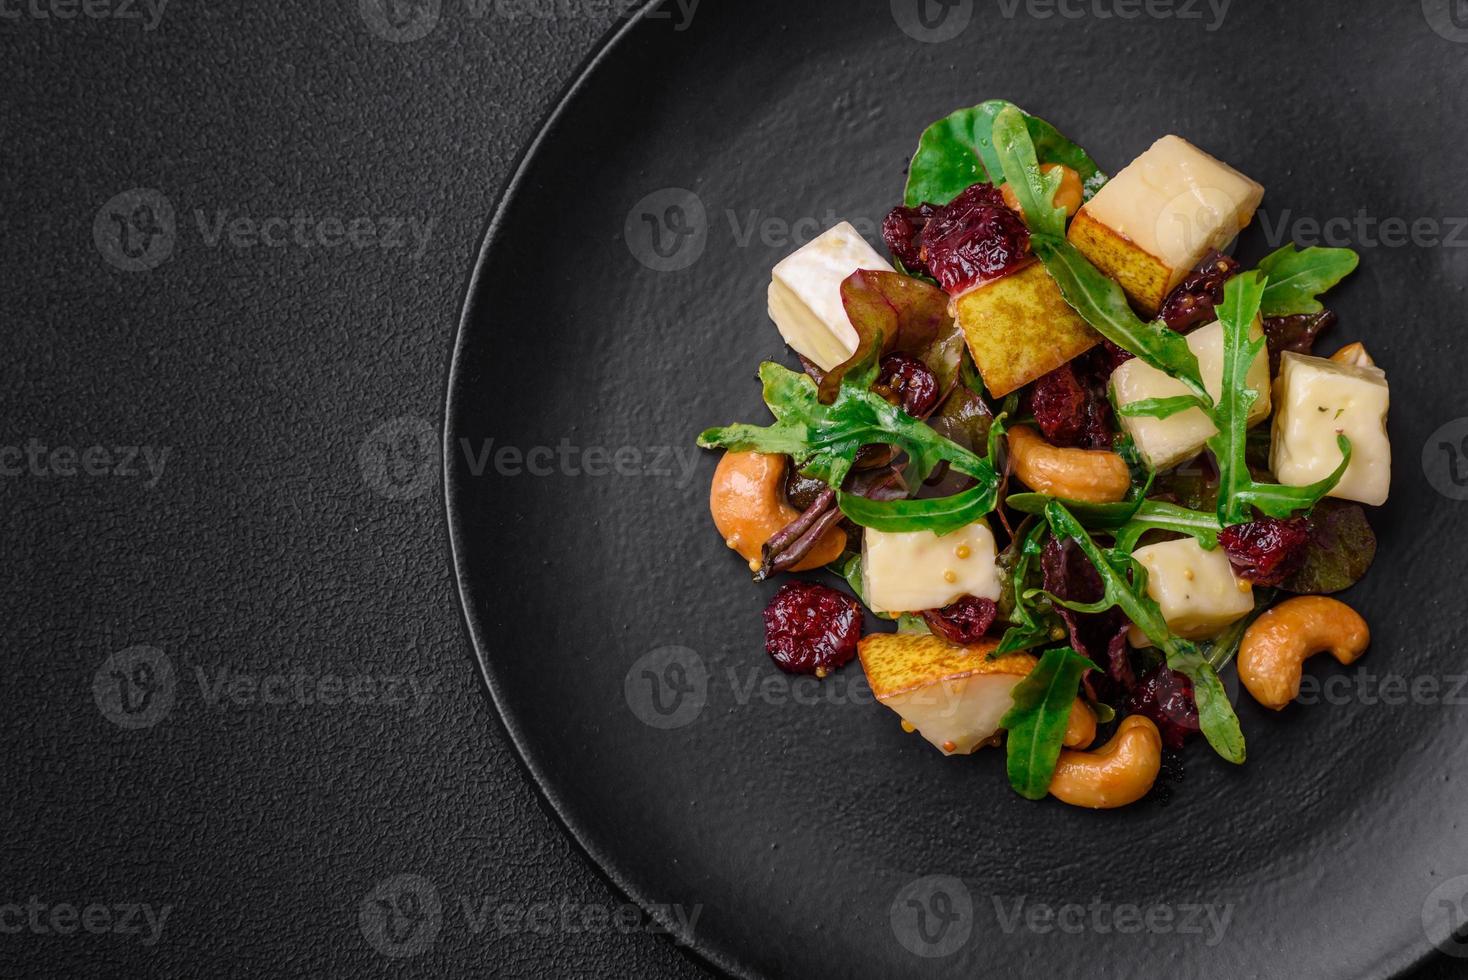 köstlich frisch vegan Salat mit Birne, Brie Käse, Nüsse und Körner, und Rucola foto